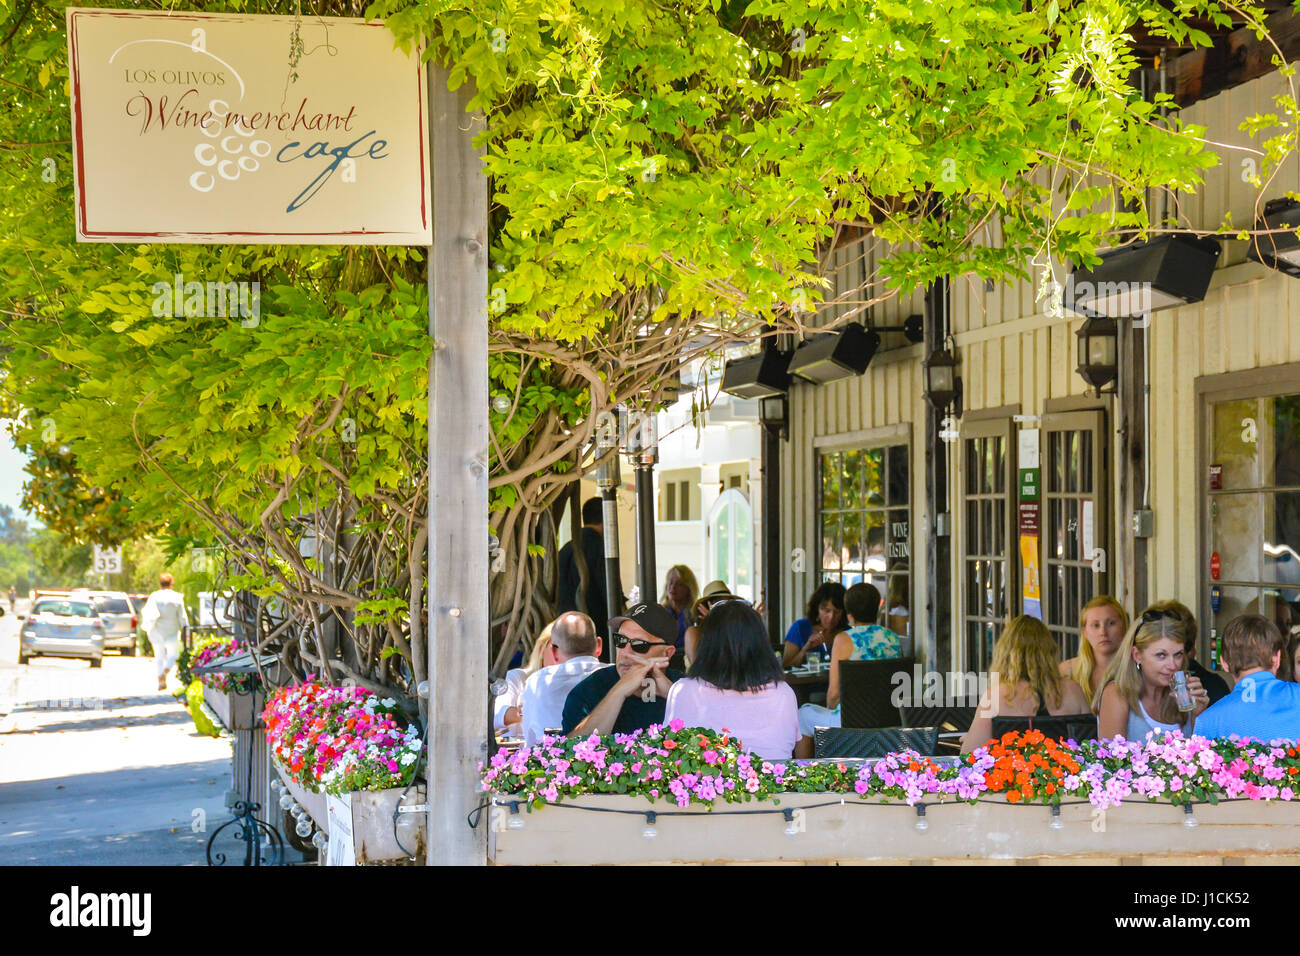 Les gens apprécient le patio extérieur restauration pour Los Olivos Wine merchant & Cafe à Los Olivos, CA entouré de fleurs colorées et dans des boîtes Banque D'Images